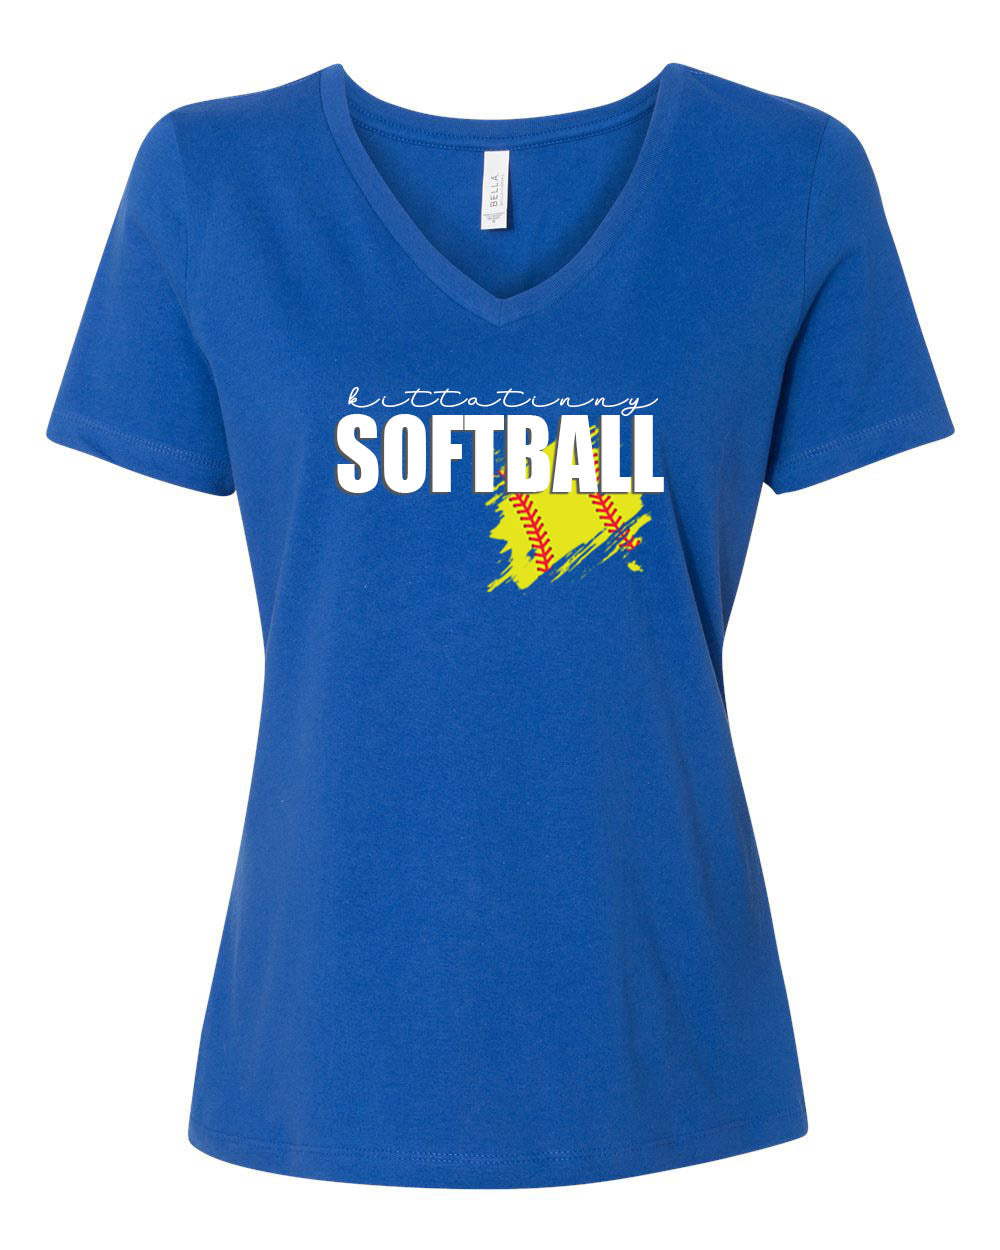 Kittatinny Softball V-neck T-Shirt